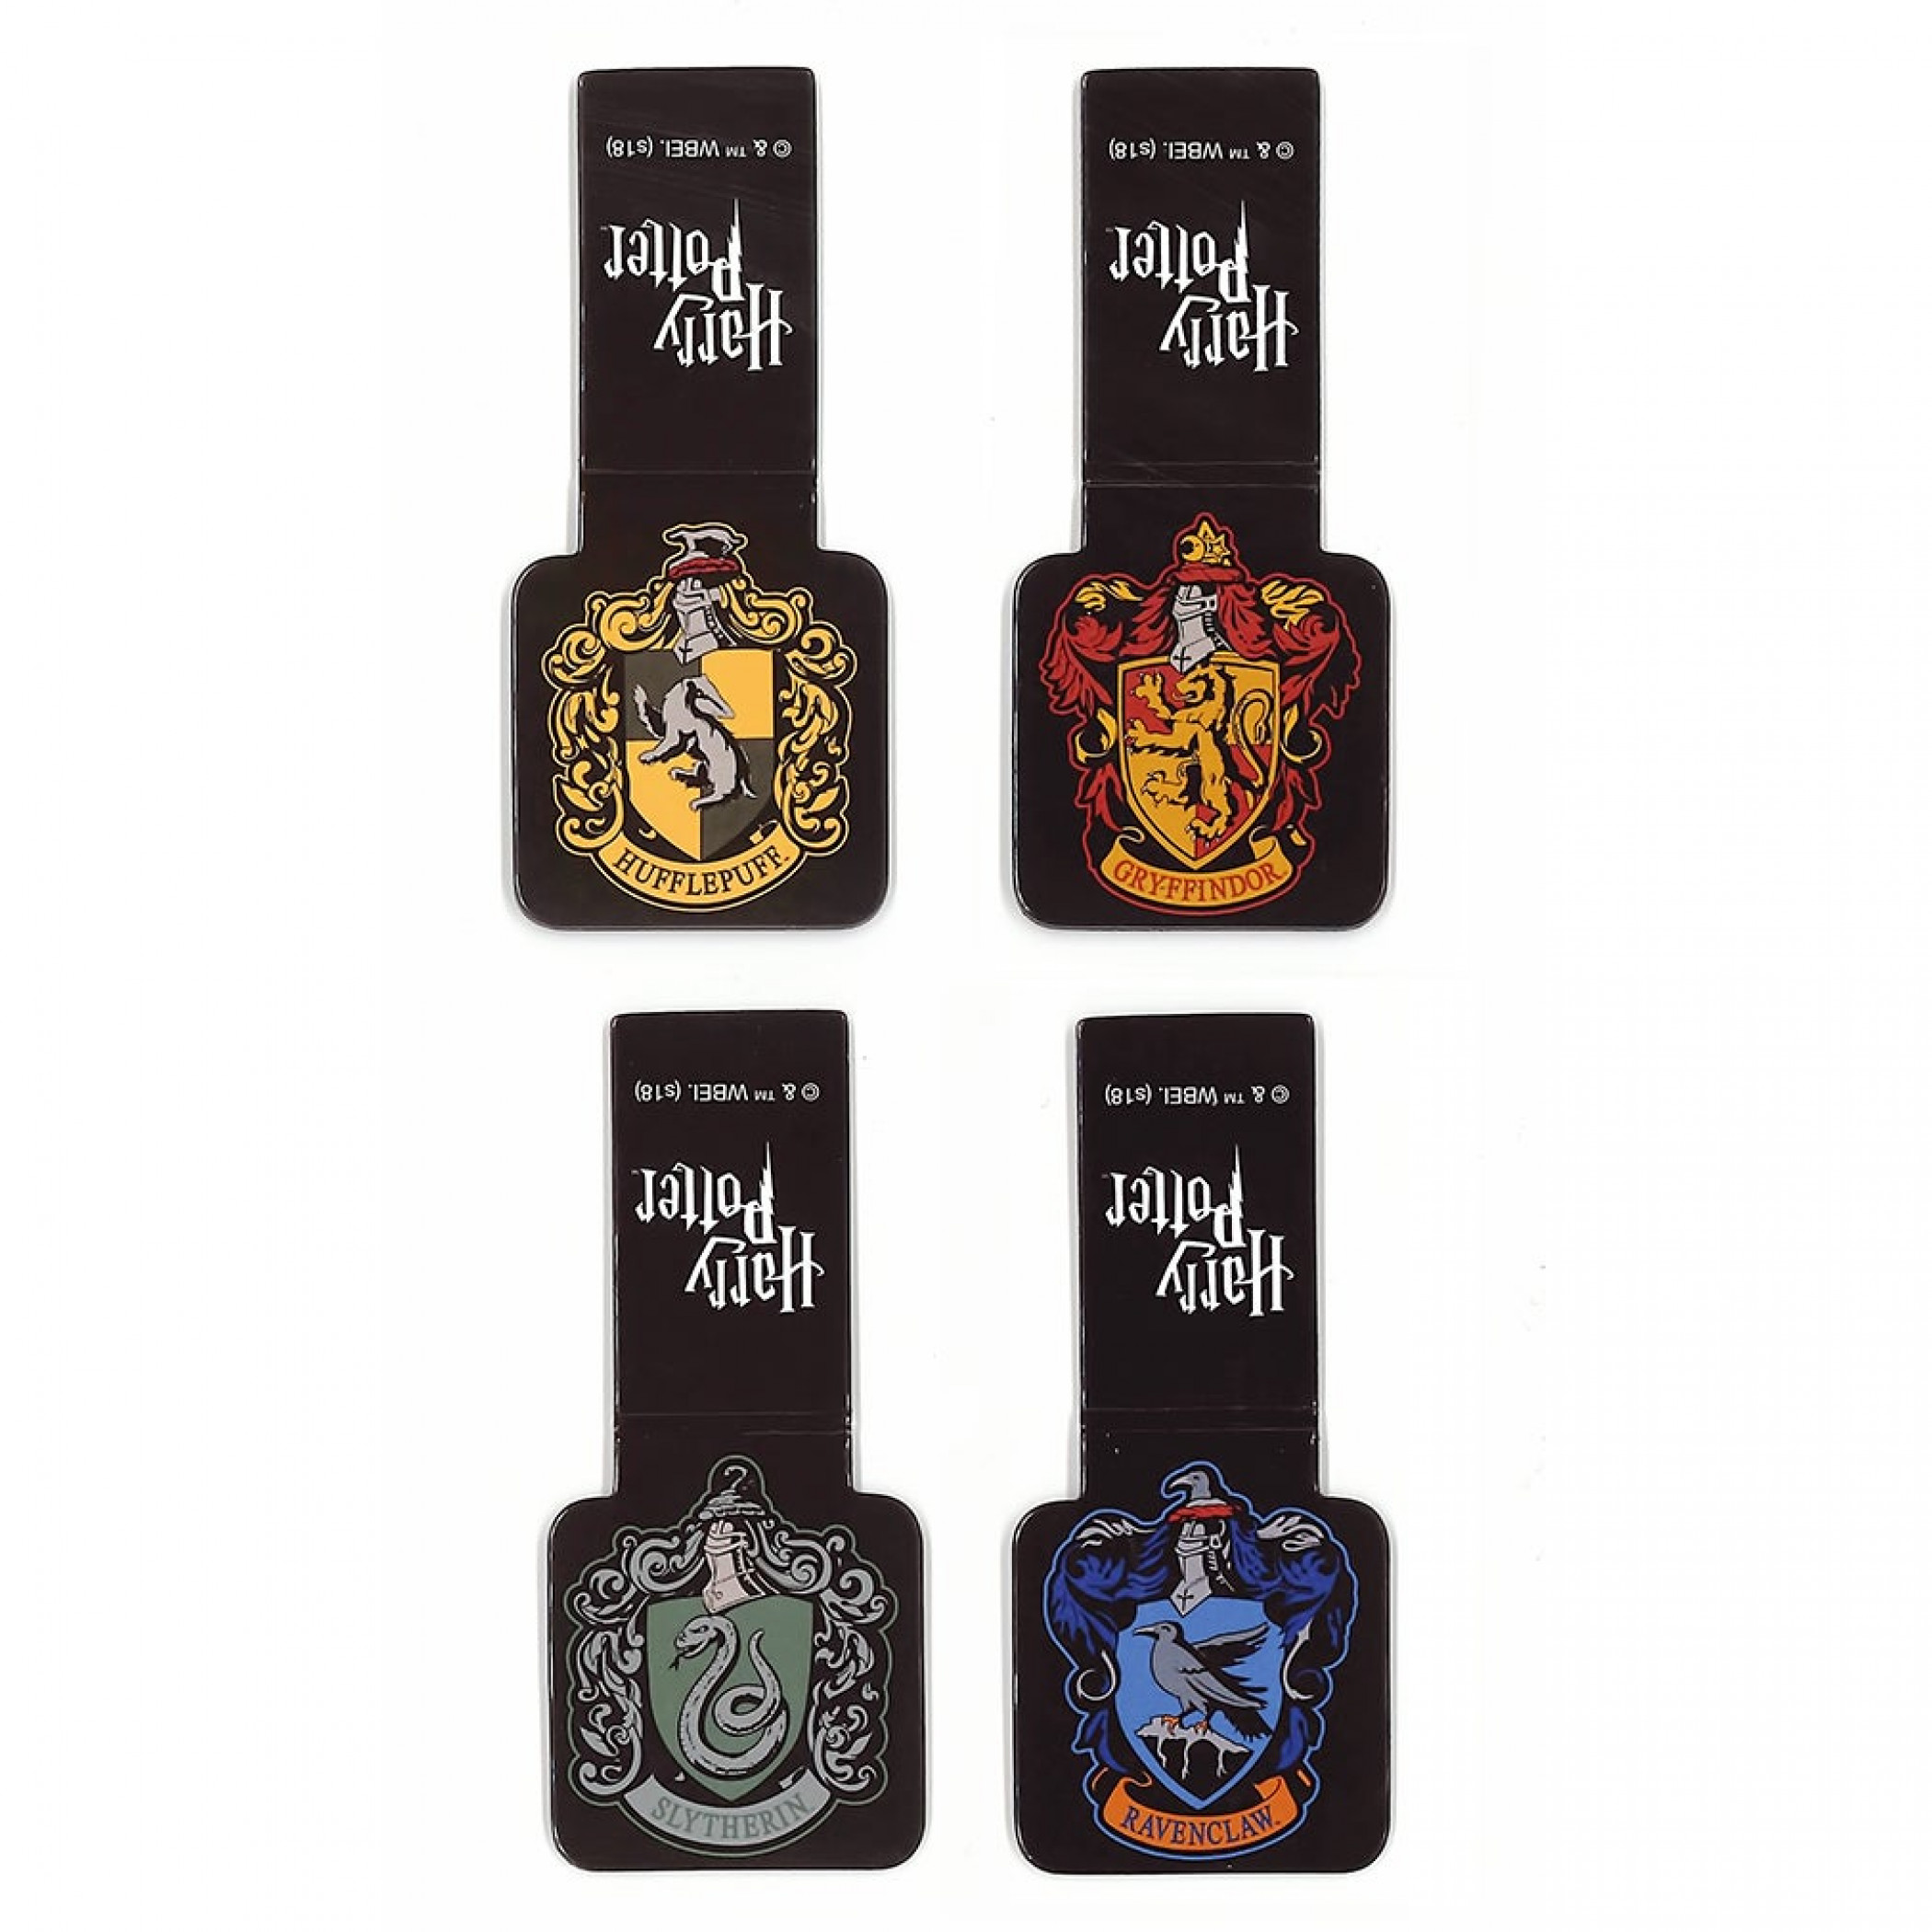 Harry Potter School Crests Magnetic Bookmarks Set Of 4